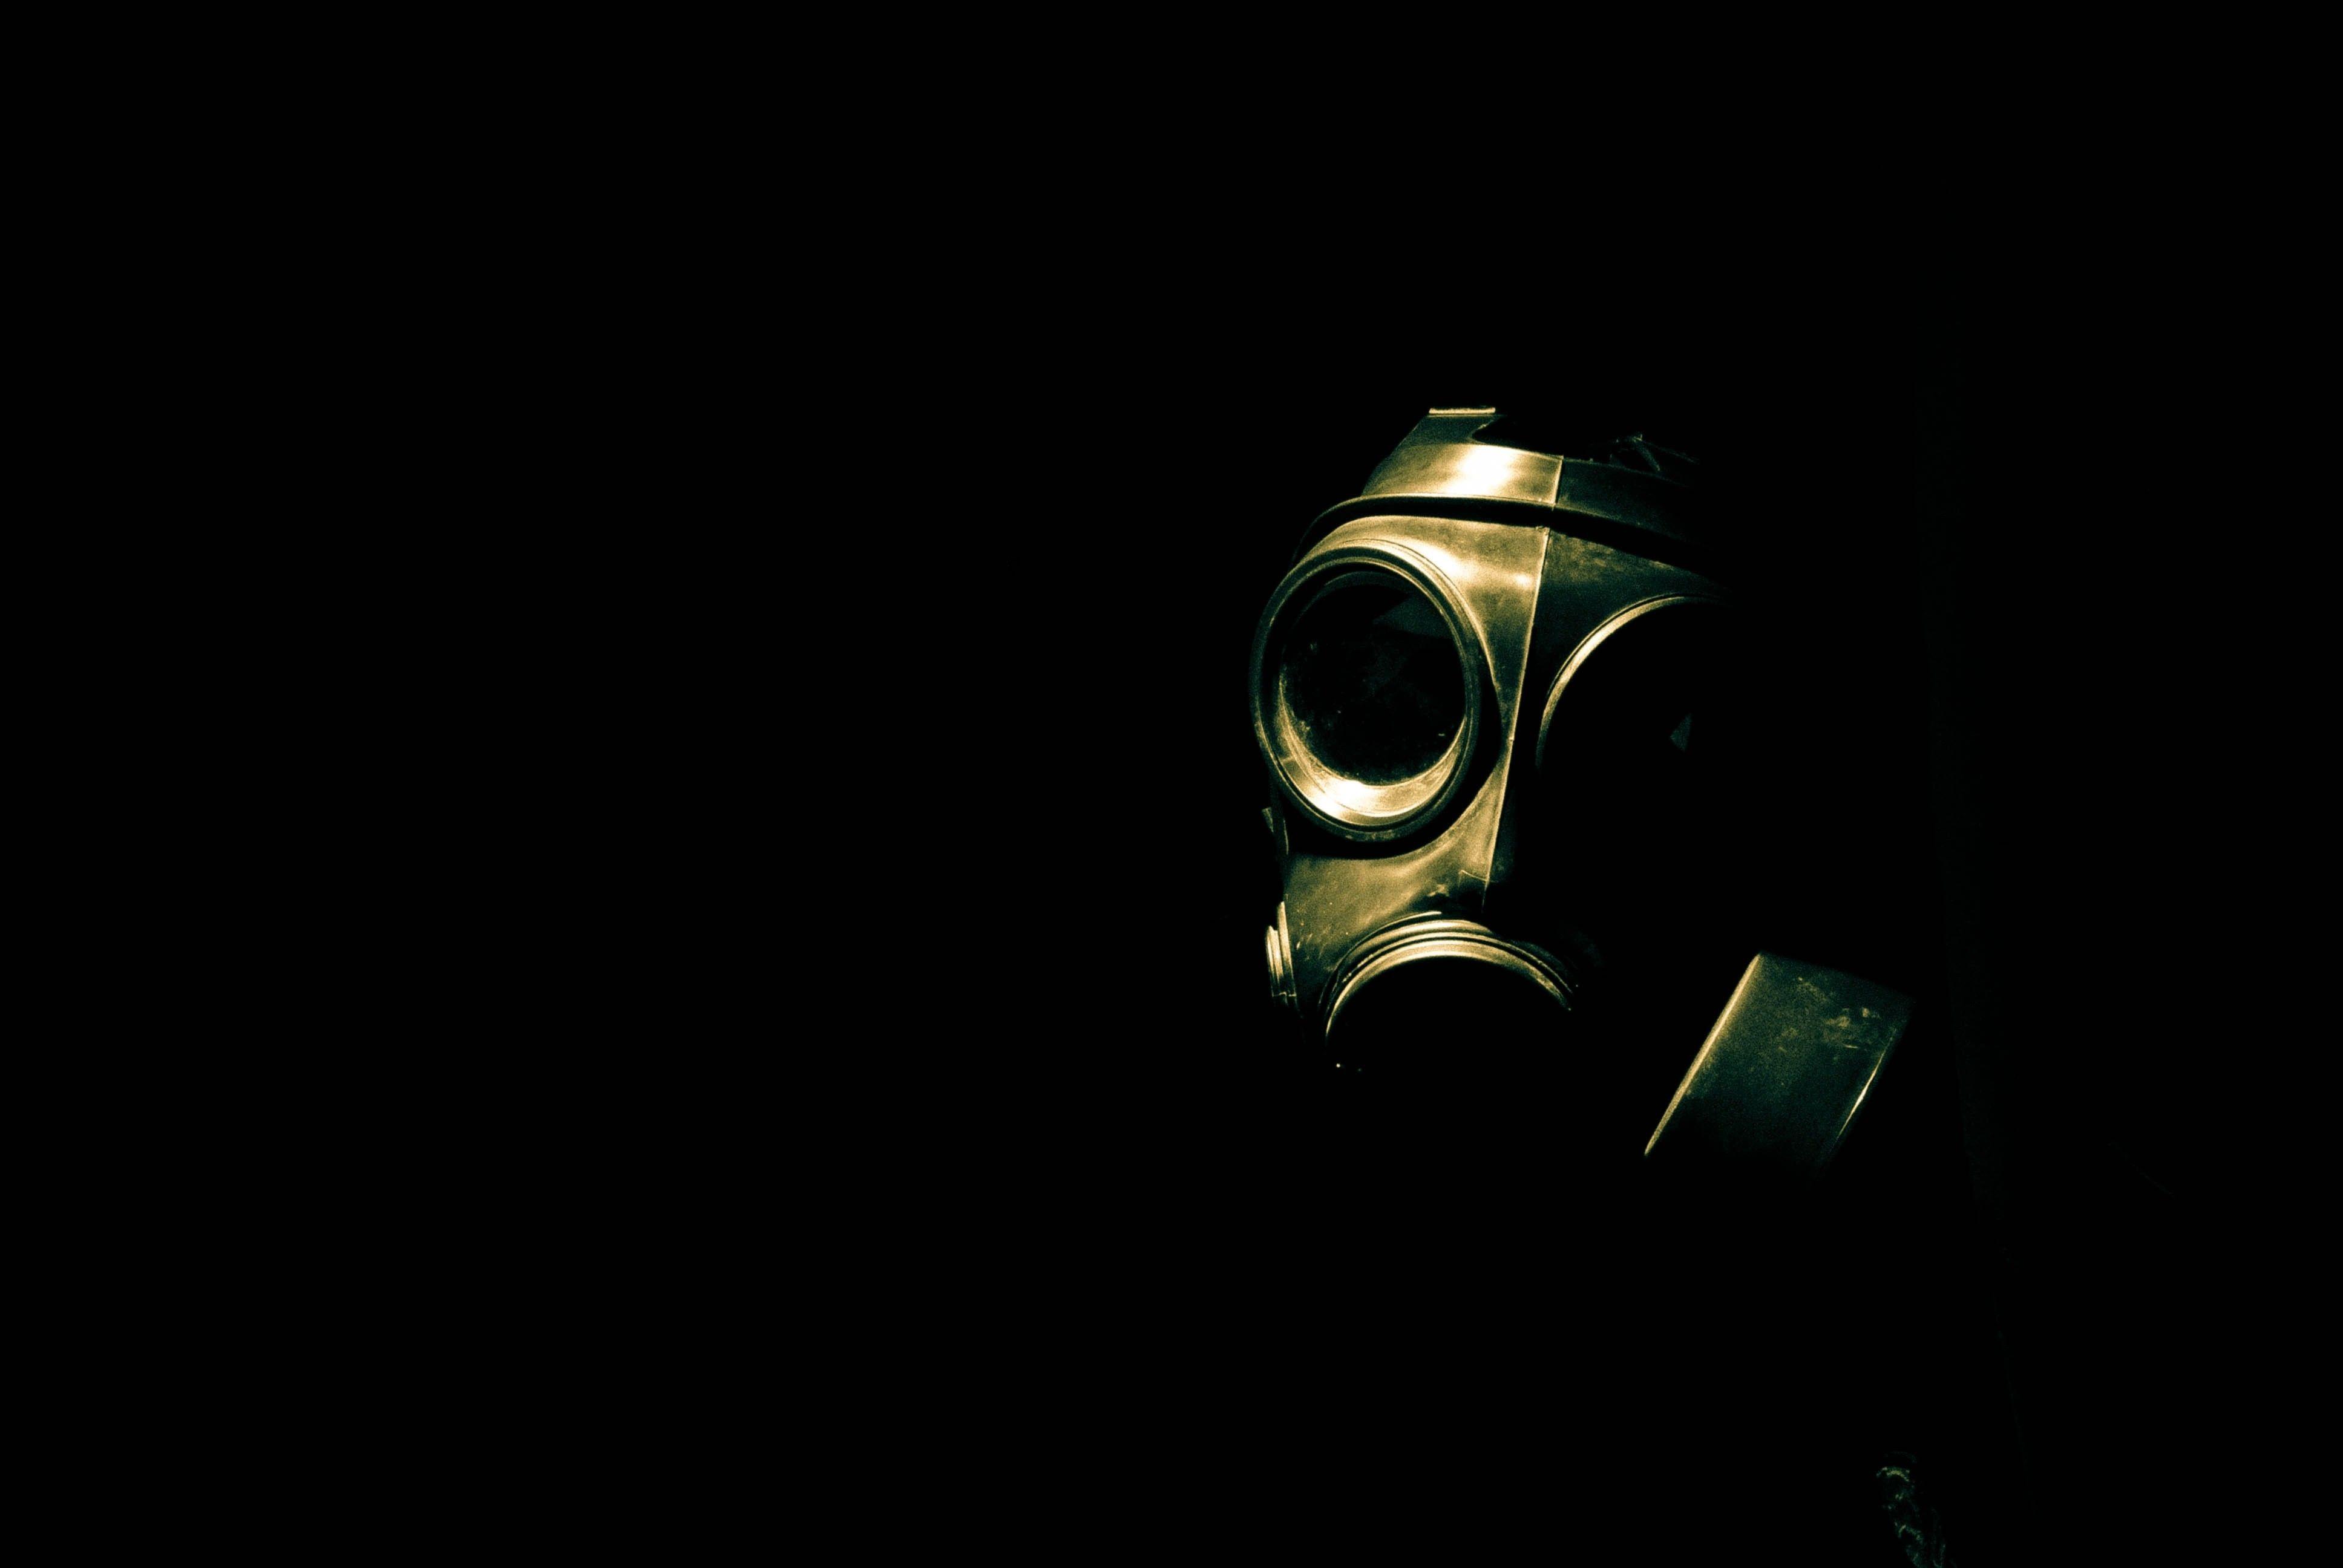 biohazard gas masks 3872x2592 wallpaper High Quality Wallpaper, High